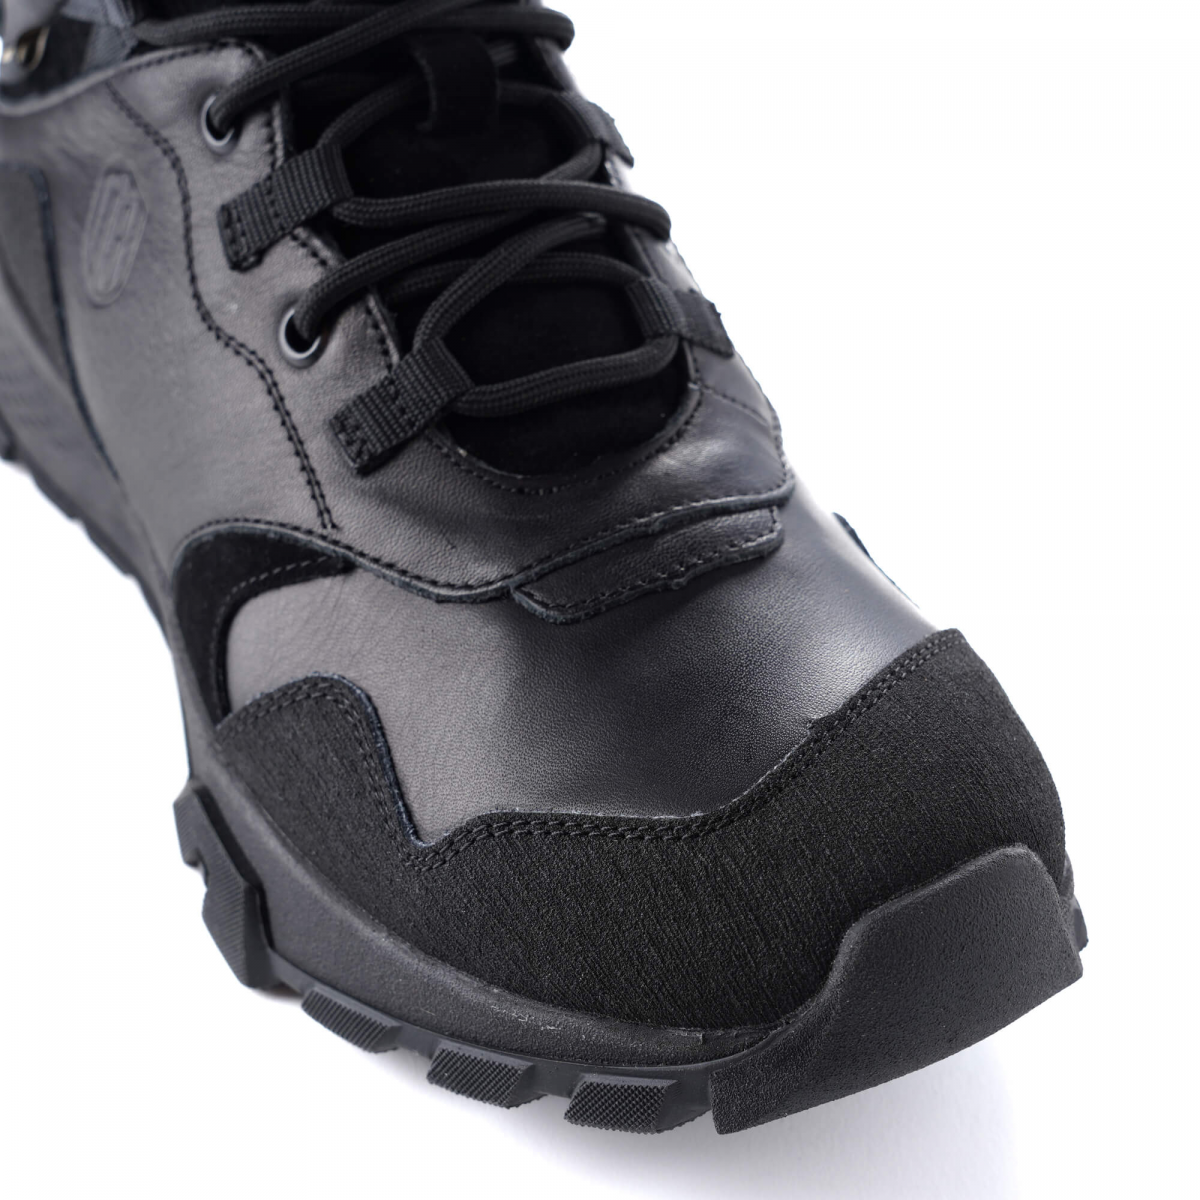 Трекинговые зимние ботинки Milbot Terrun Gore-tex. Черный. Размер 40 6